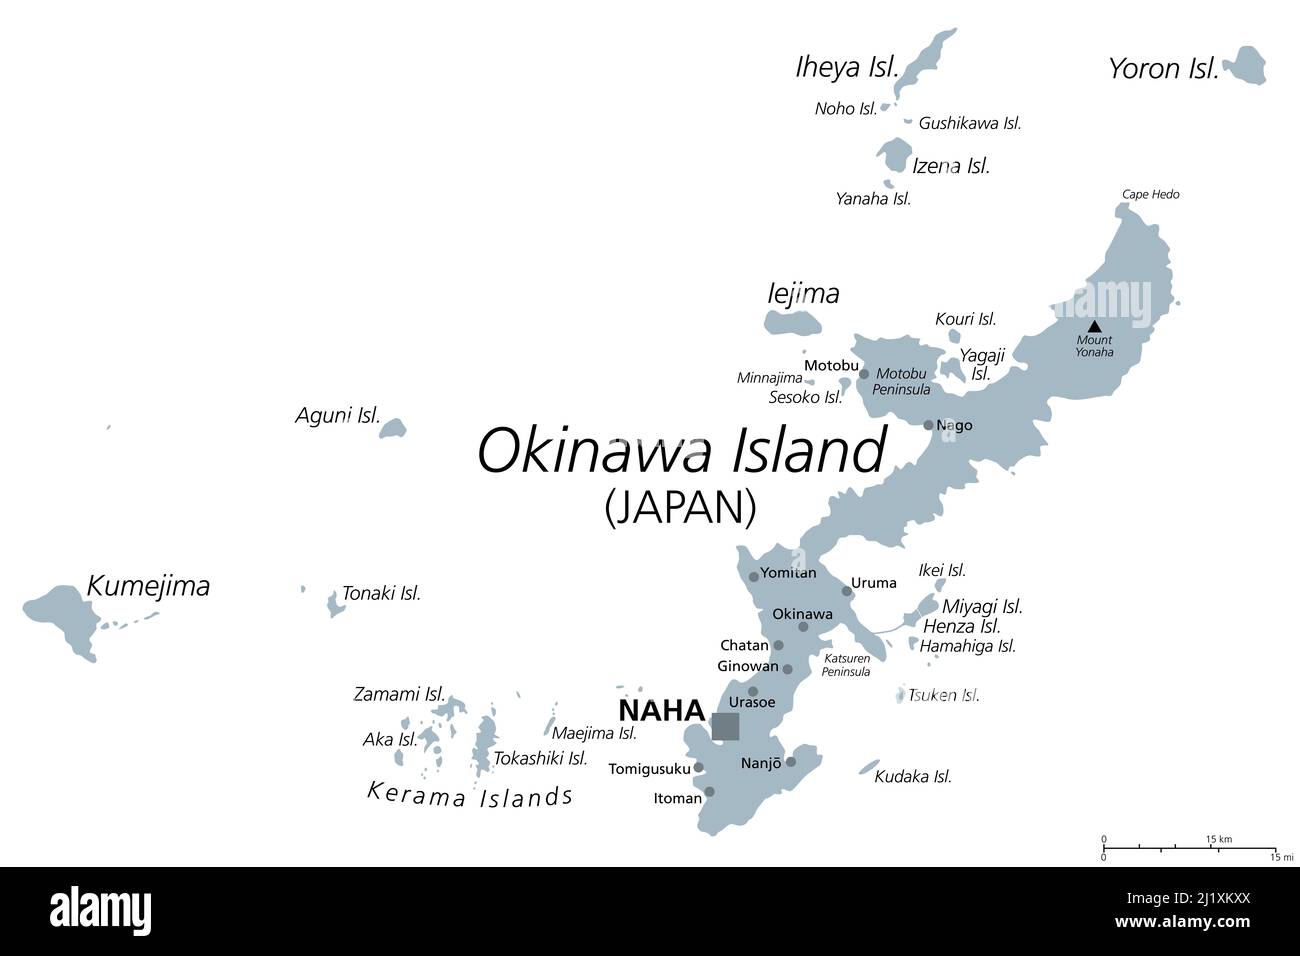 Isole Okinawa, mappa politica grigia. Gruppo di isole nella Prefettura di Okinawa del Giappone, nel Mare della Cina Orientale, con la capitale Naha. Foto Stock